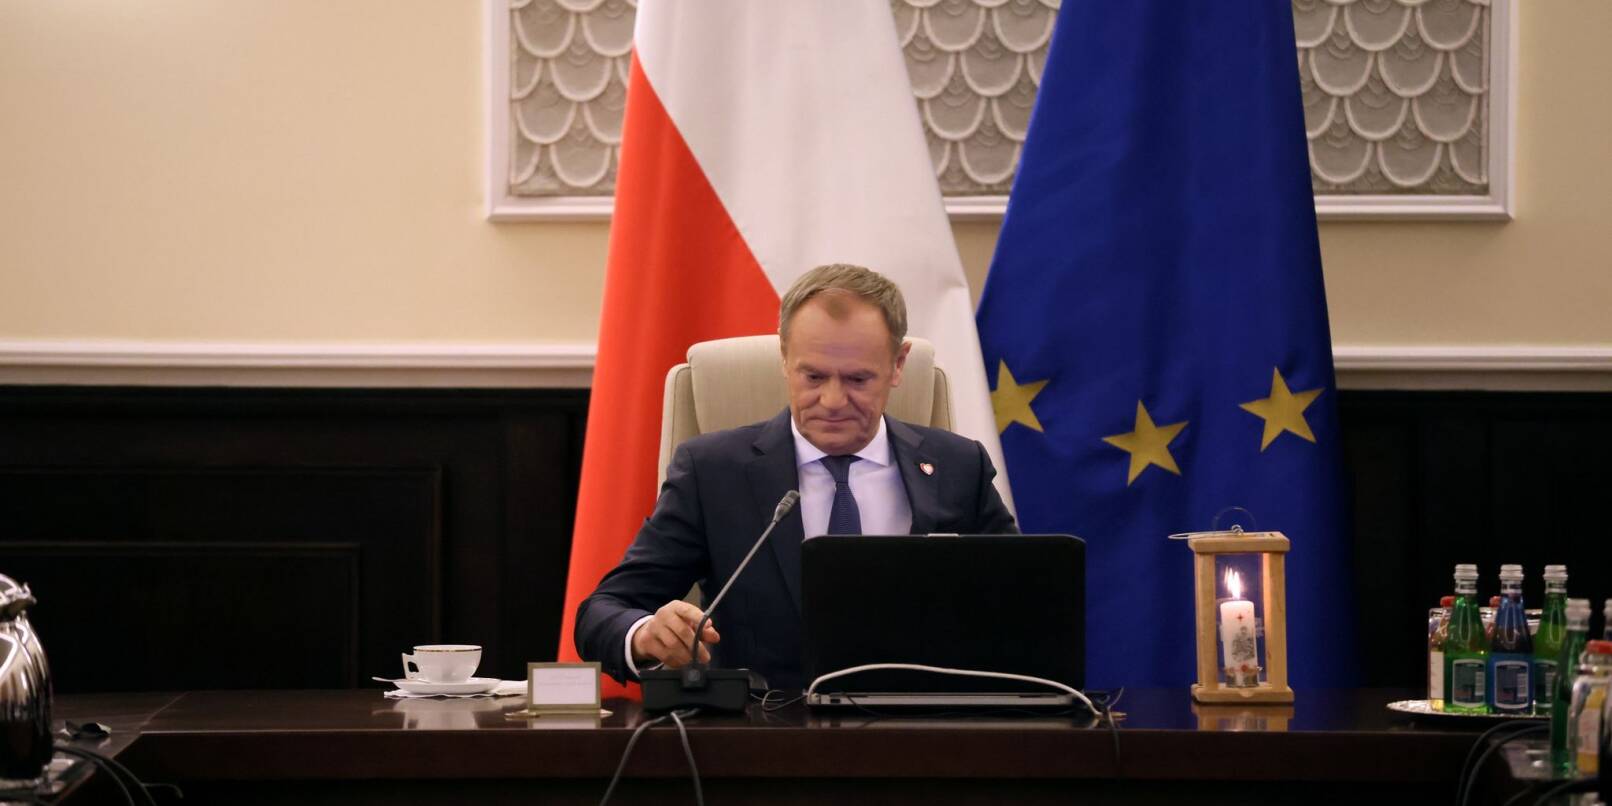 Donald Tusk ist der neue Ministerpräsident von Polen. Der Umbau und die inhaltliche Neuausrichtung des öffentlich-rechtlichen Rundfunks zählt zu den Prioritäten seiner Regierung.